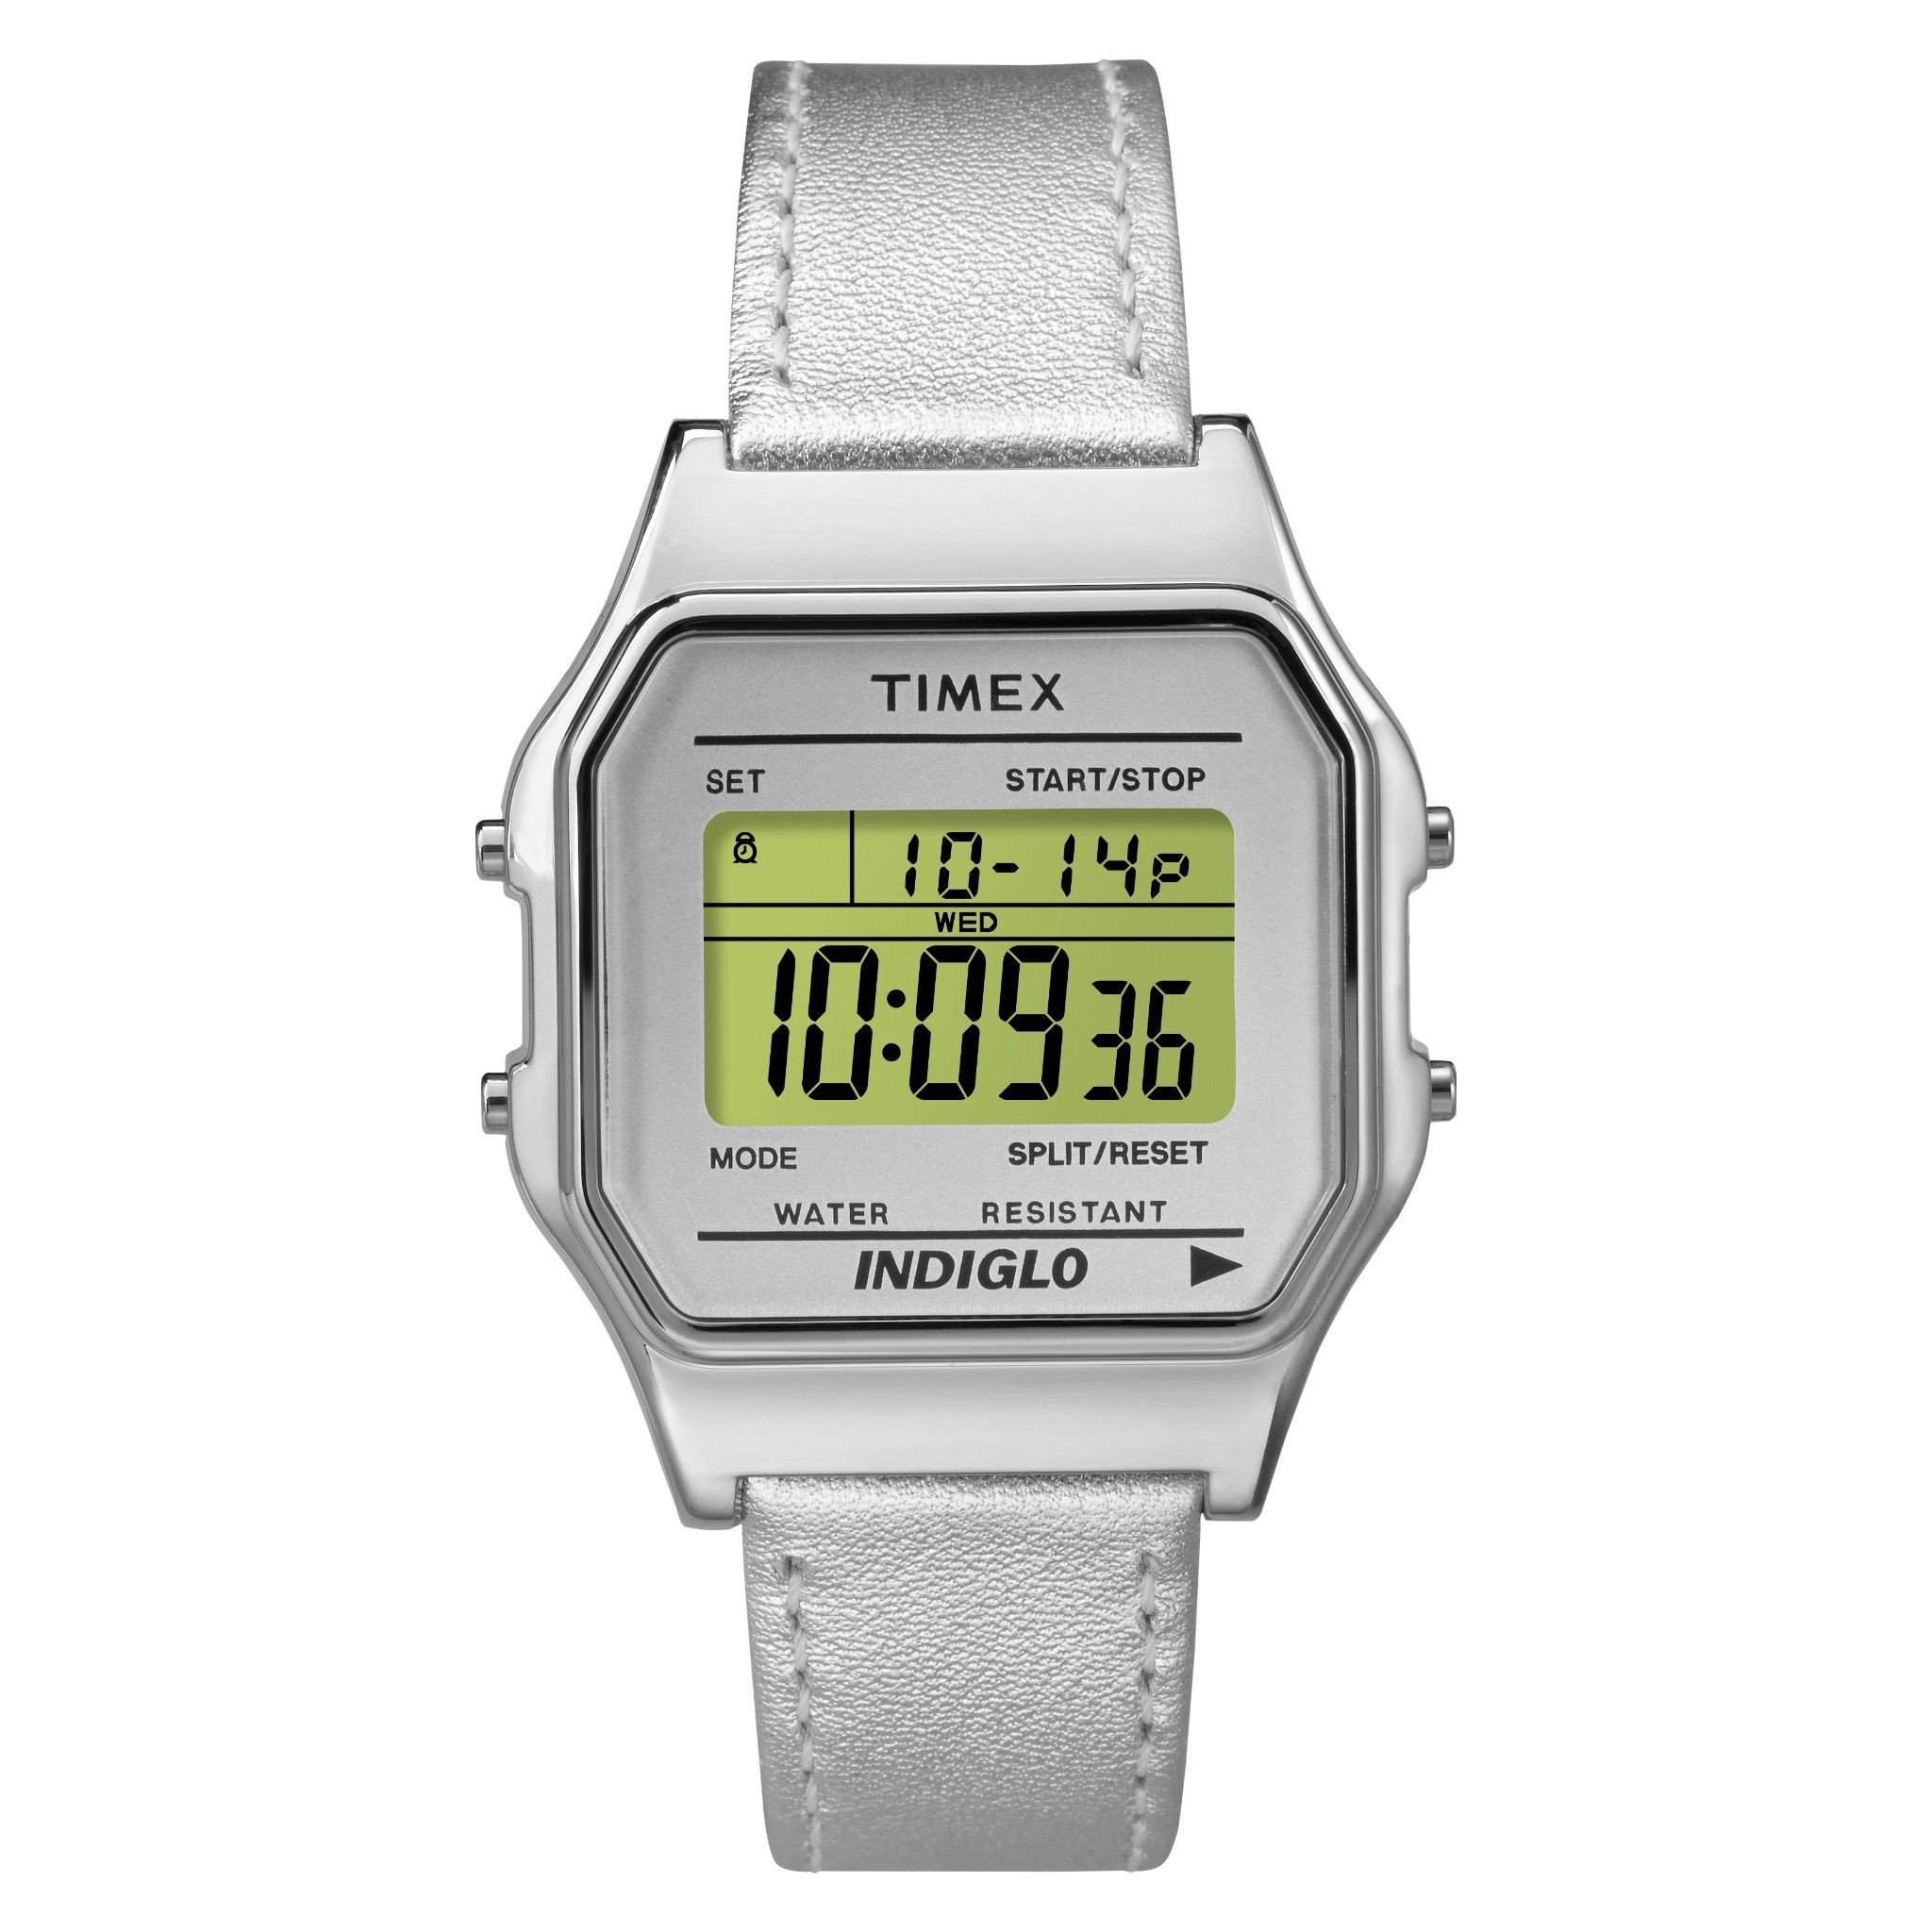  Timex - Đồng Hồ Nam Dây Da TW2P76800 Timex 80 (Màu Bạc) 